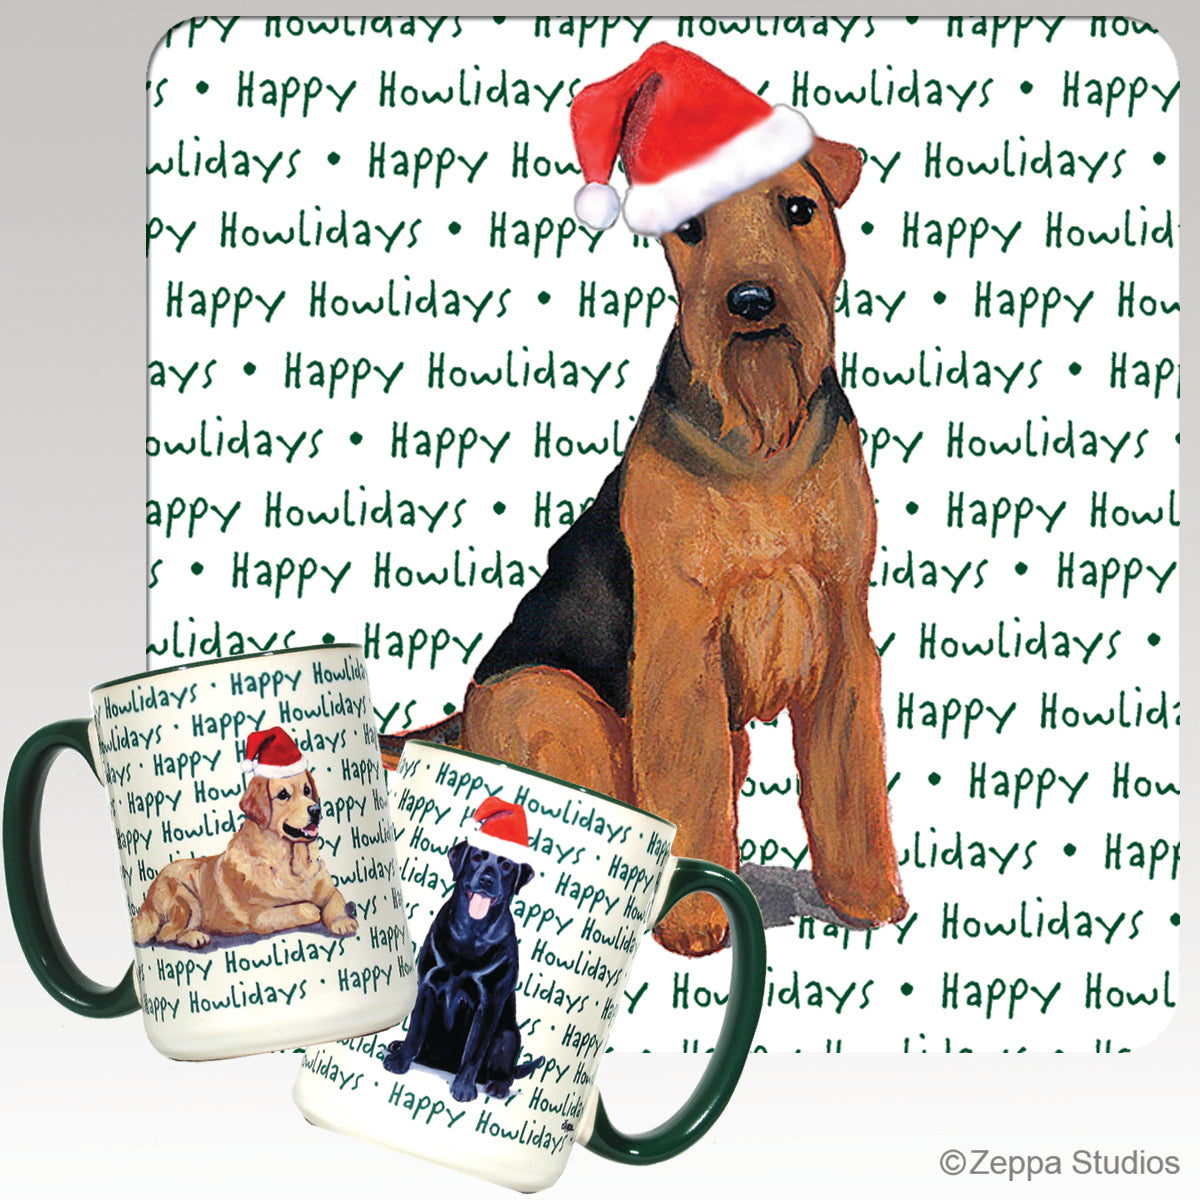 Welsh Terrier Christmas Mugs